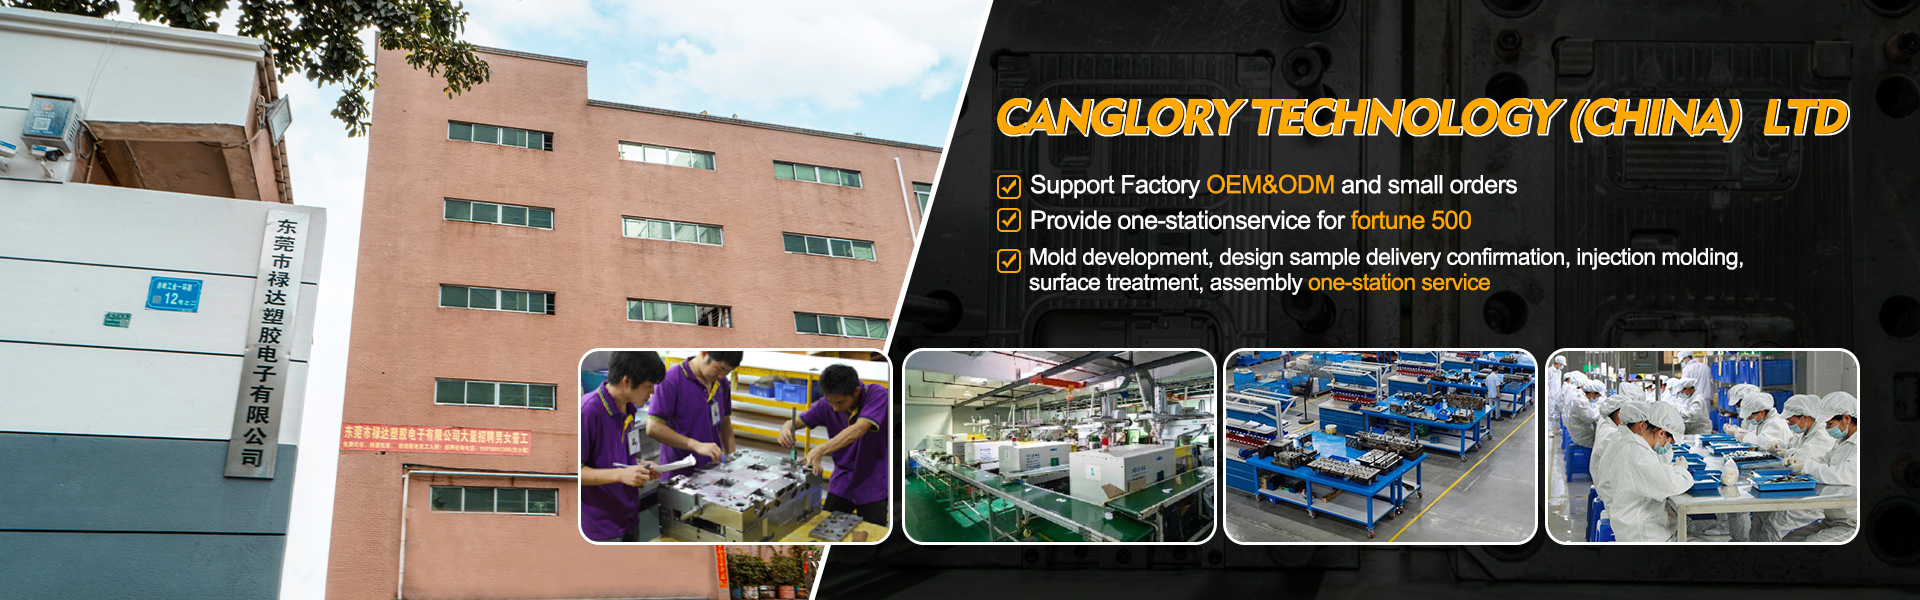 Acasă - Turnare, injecție, producător de echipamente originale|Canglory Technology (China) Ltd